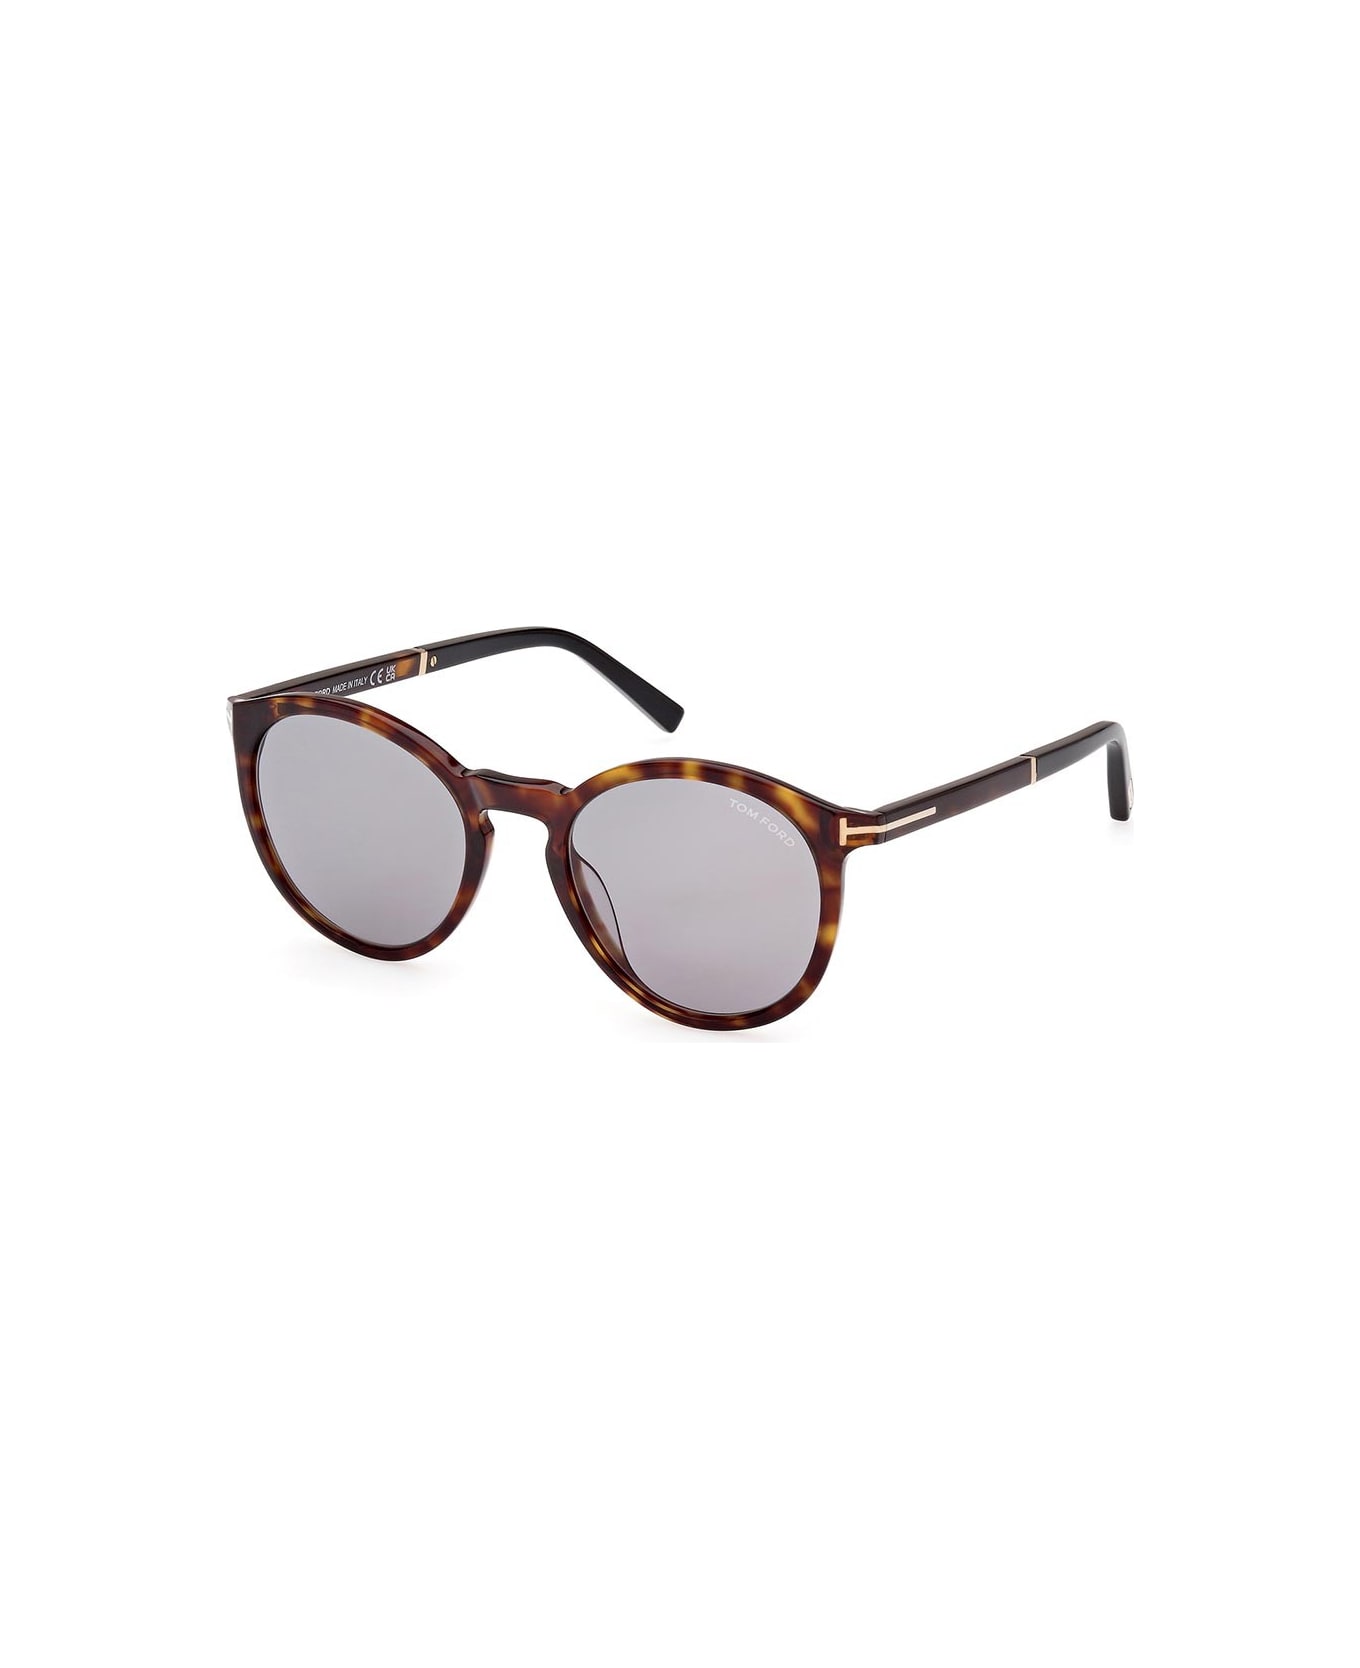 Tom Ford Eyewear Sunglasses - Marrone/Grigio